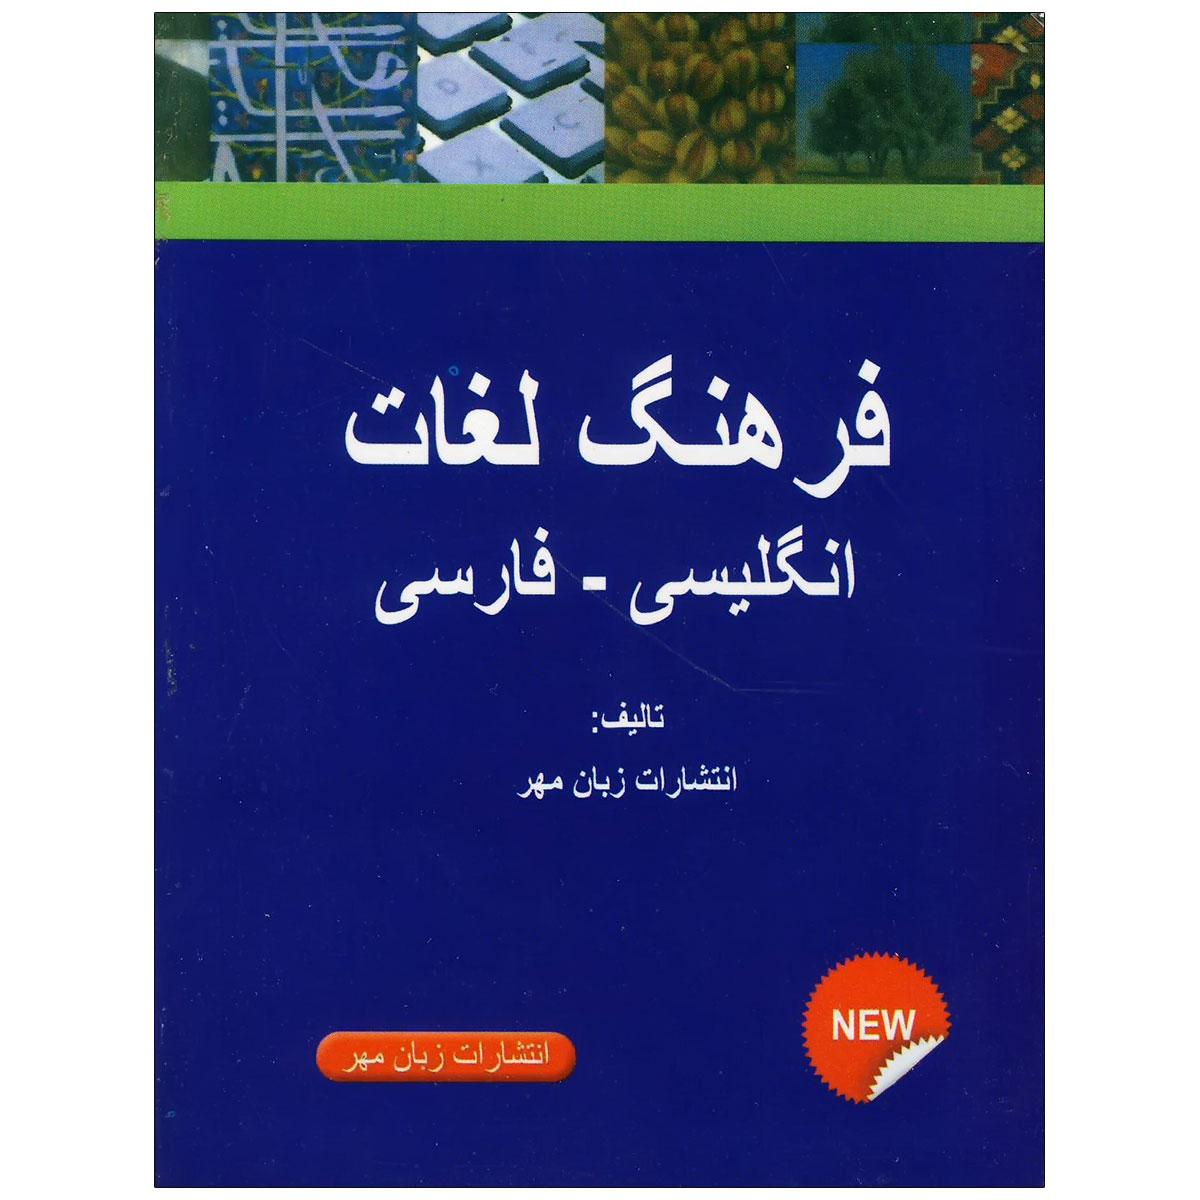 انگلیسی به فارسی فرهنگ لغت
